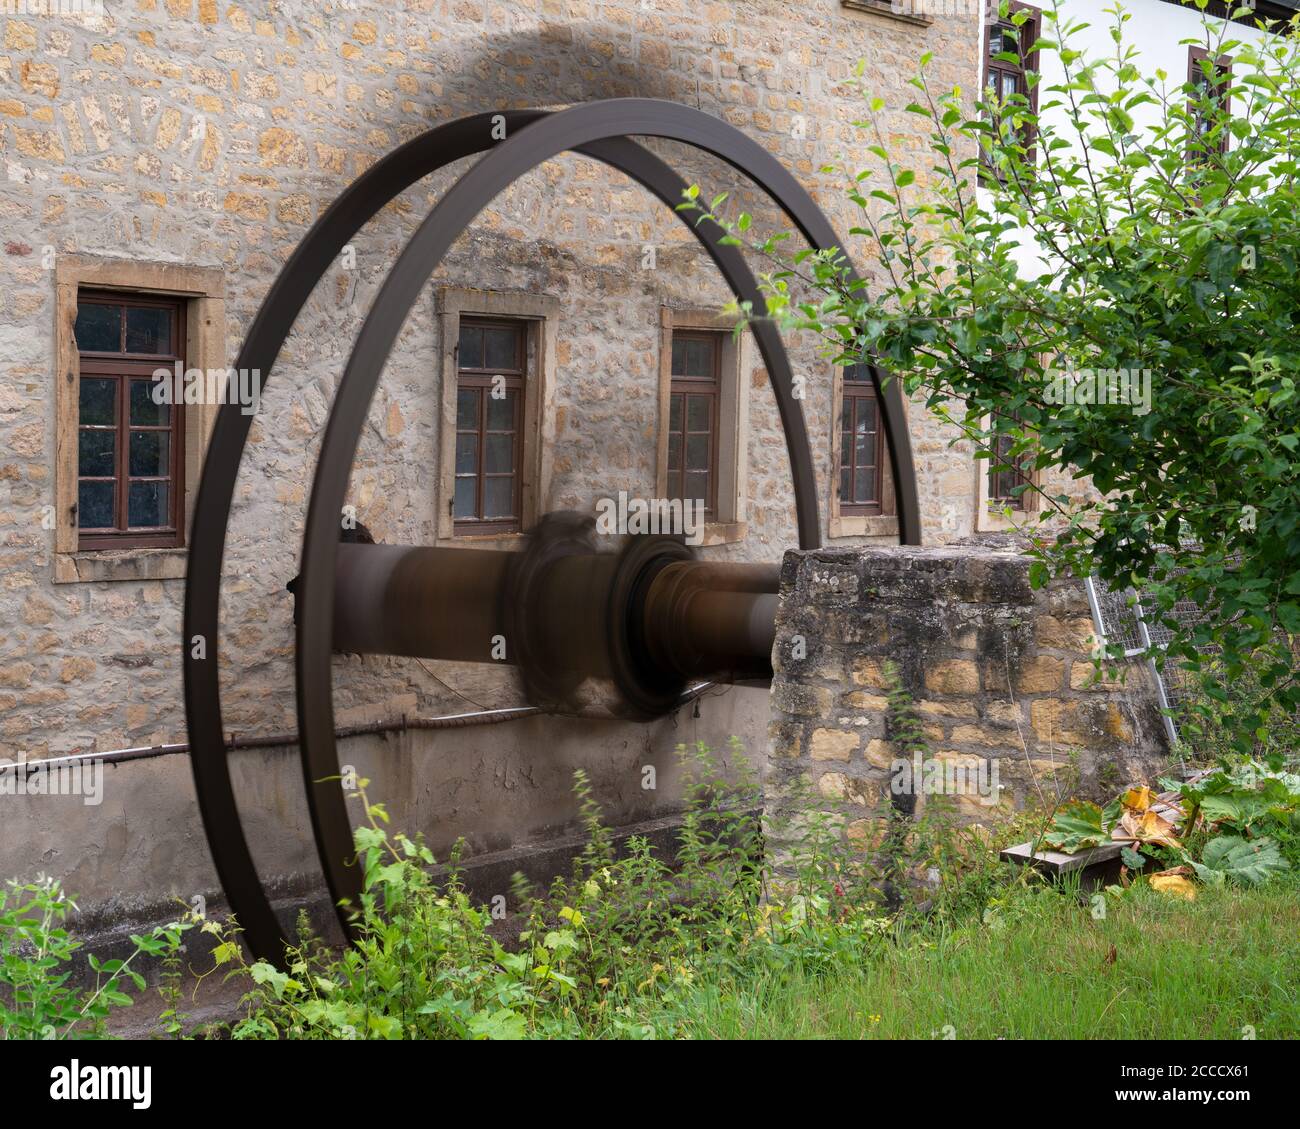 Gros plan de la roue du moulin en mouvement, ancien moulin à eau de Bad Sobernheim, Allemagne Banque D'Images